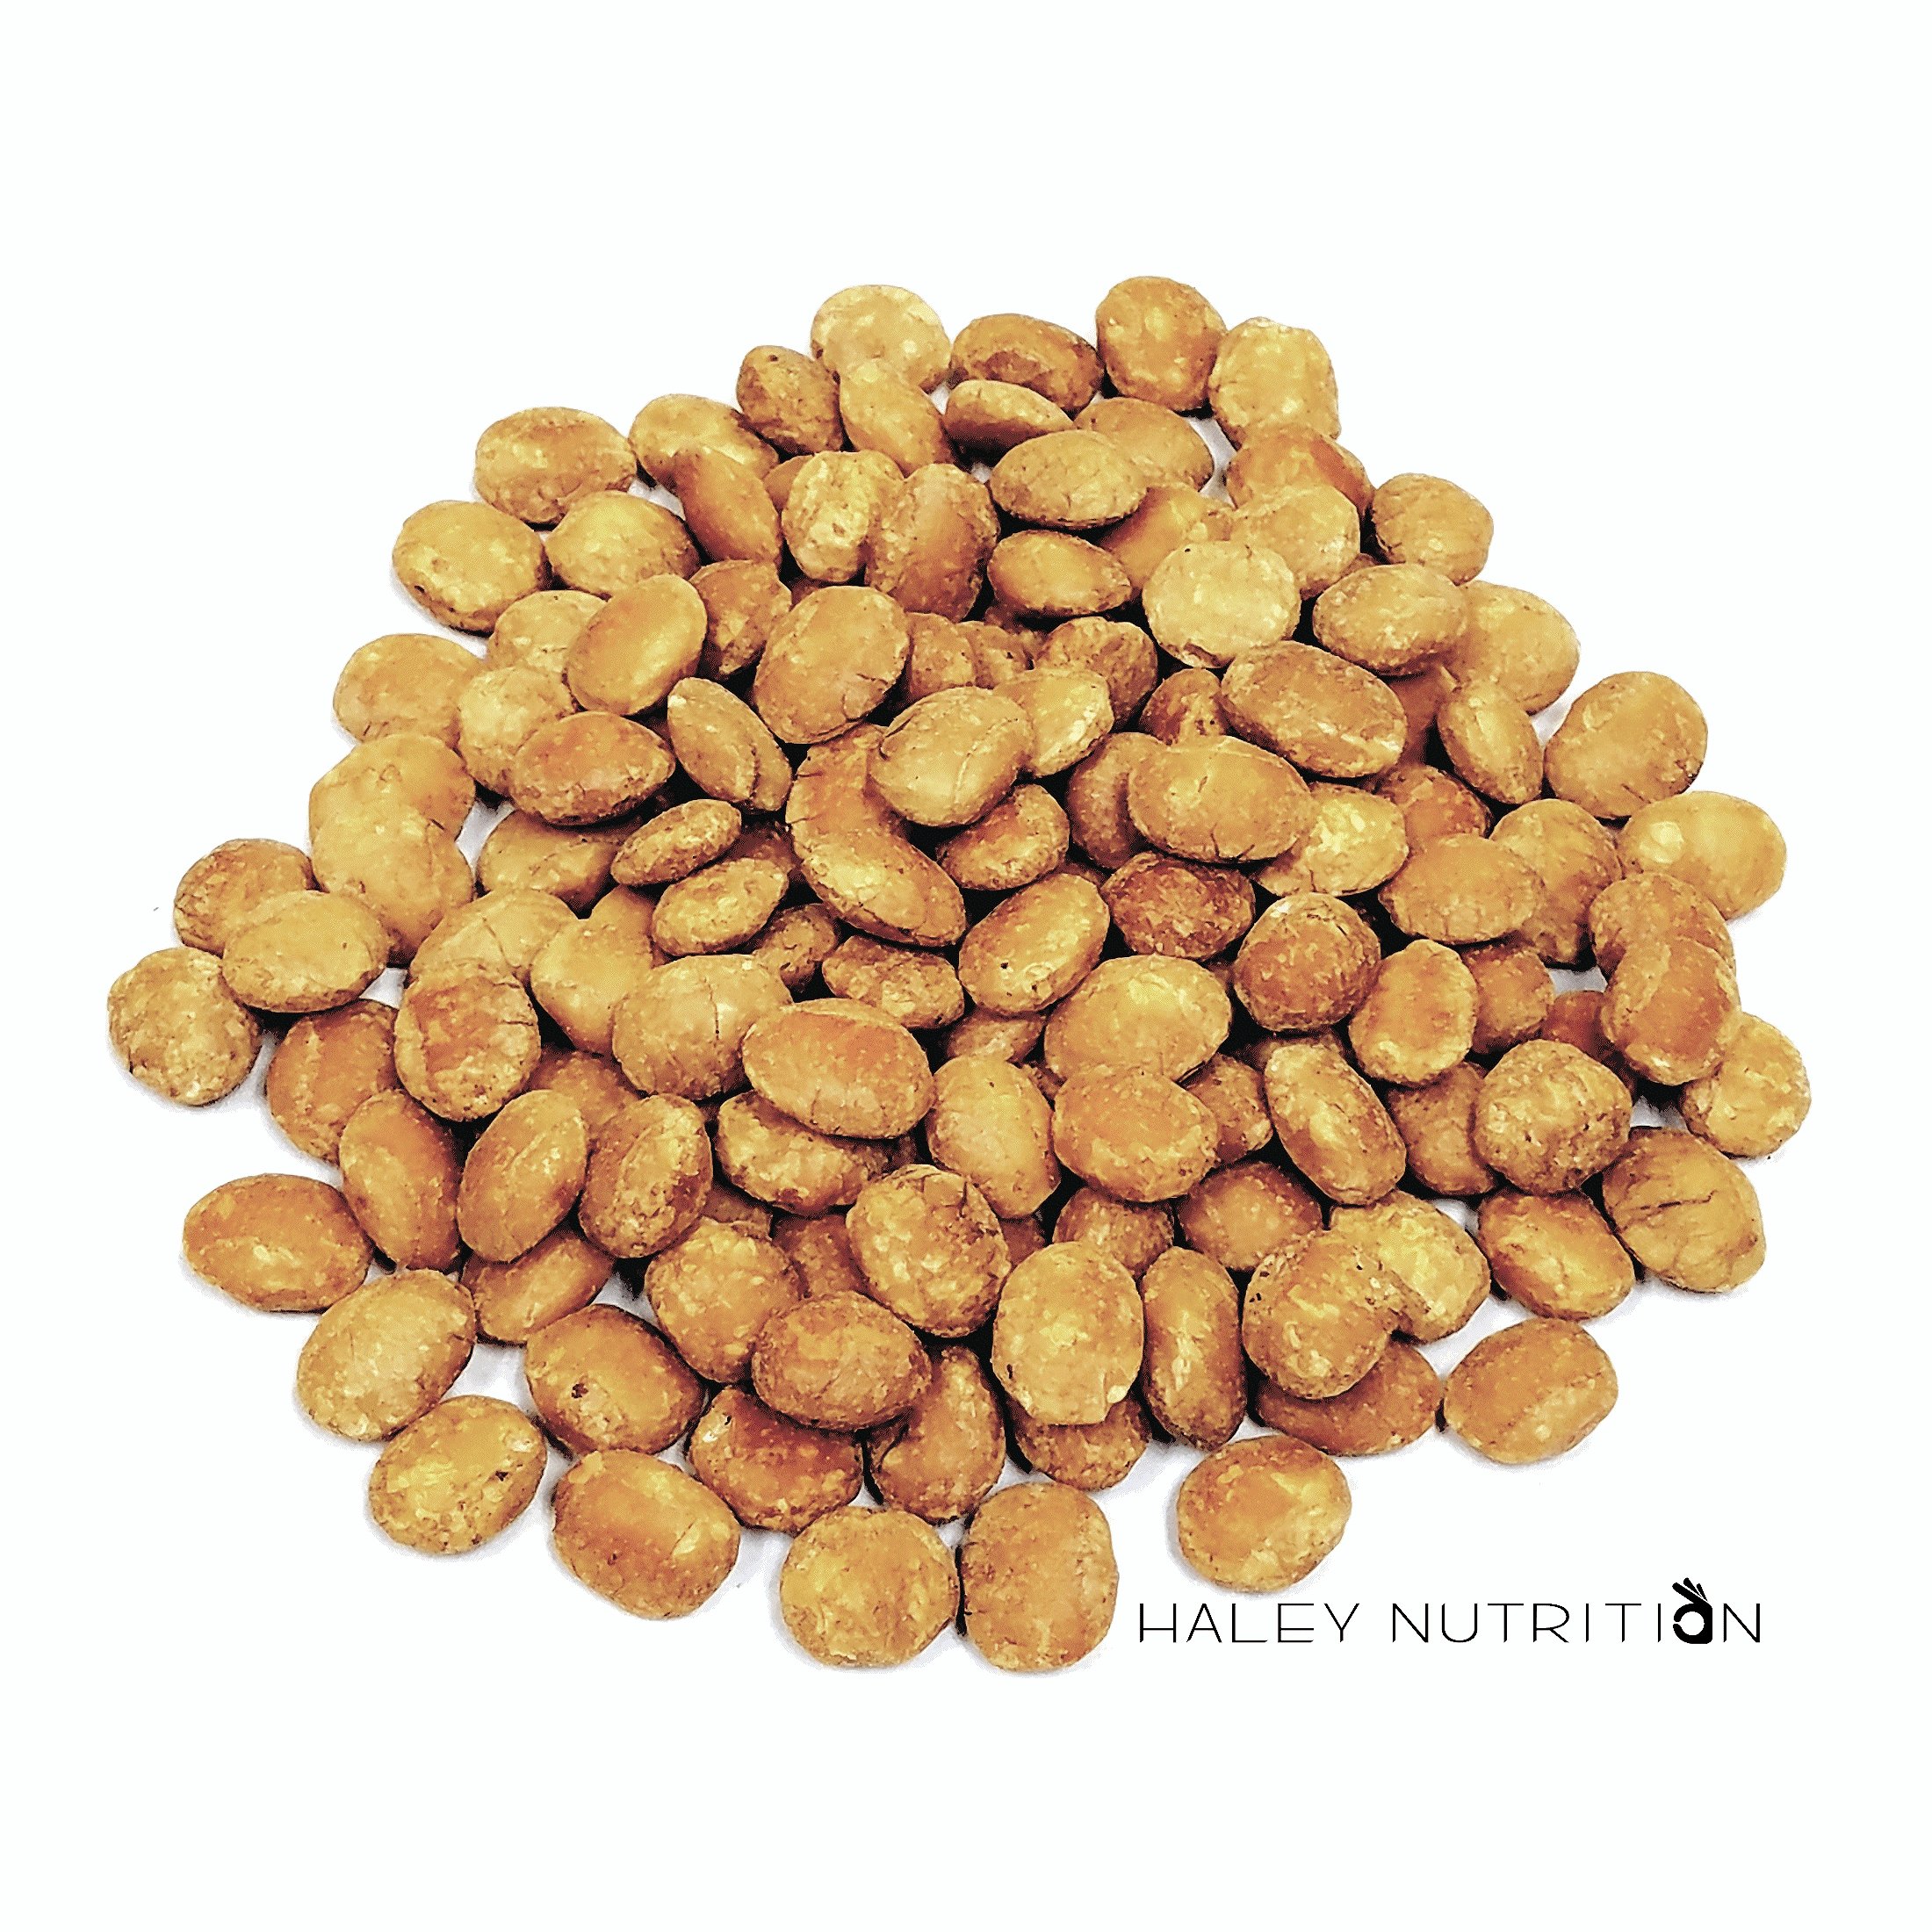 Sacha Inchi Nuts